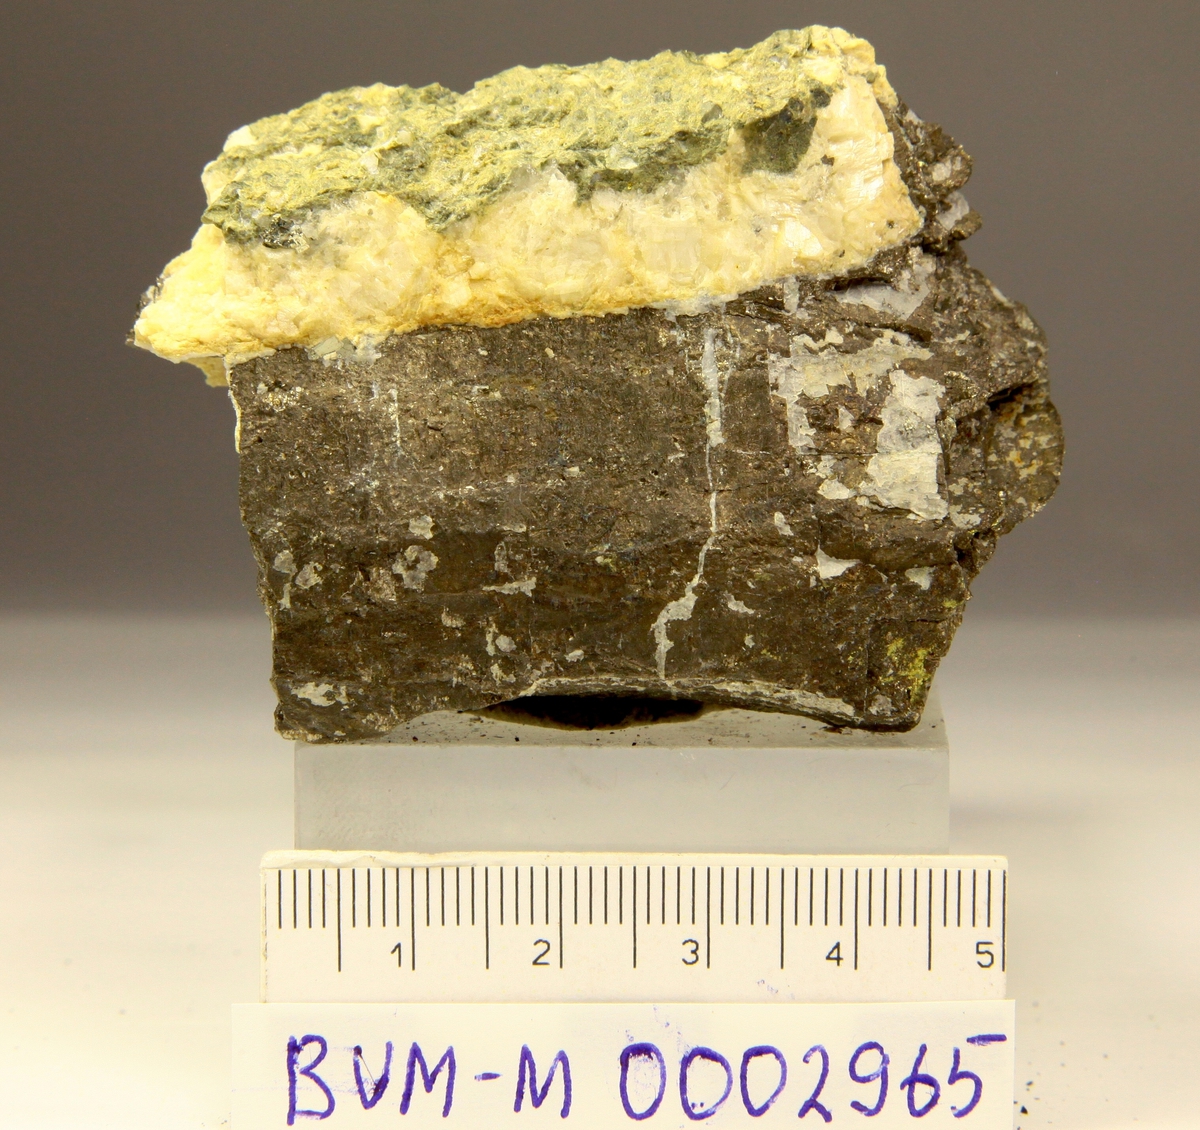 Grovkornet pyrrhotitt, mulig 2 krystallflater, med hvit karbonat.
Mannsfjellstunnelen, E39, Skaun.